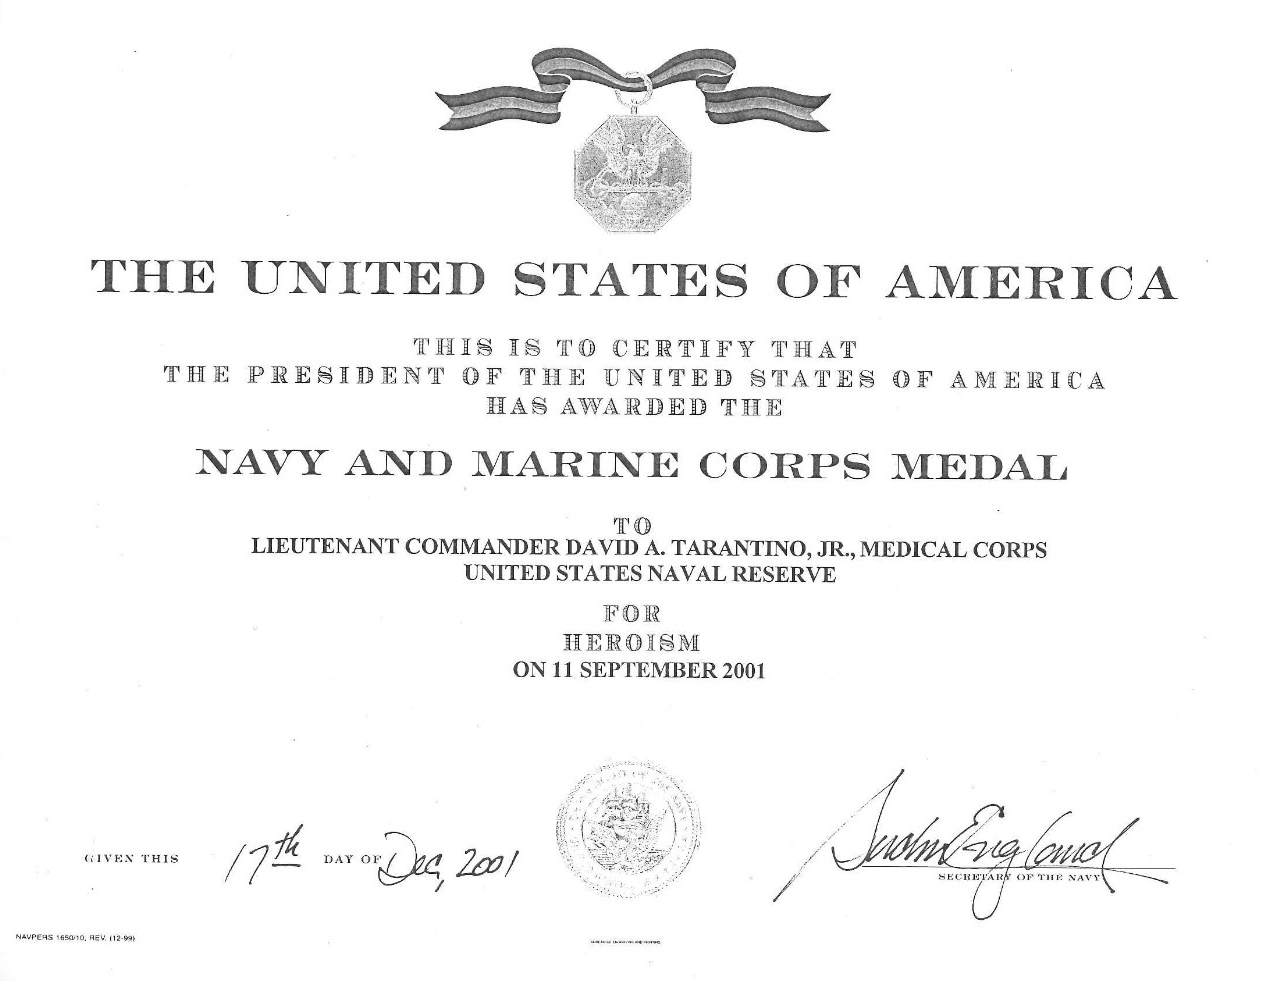 Tarantino, David LCDR Navy and Marine Corps Medal